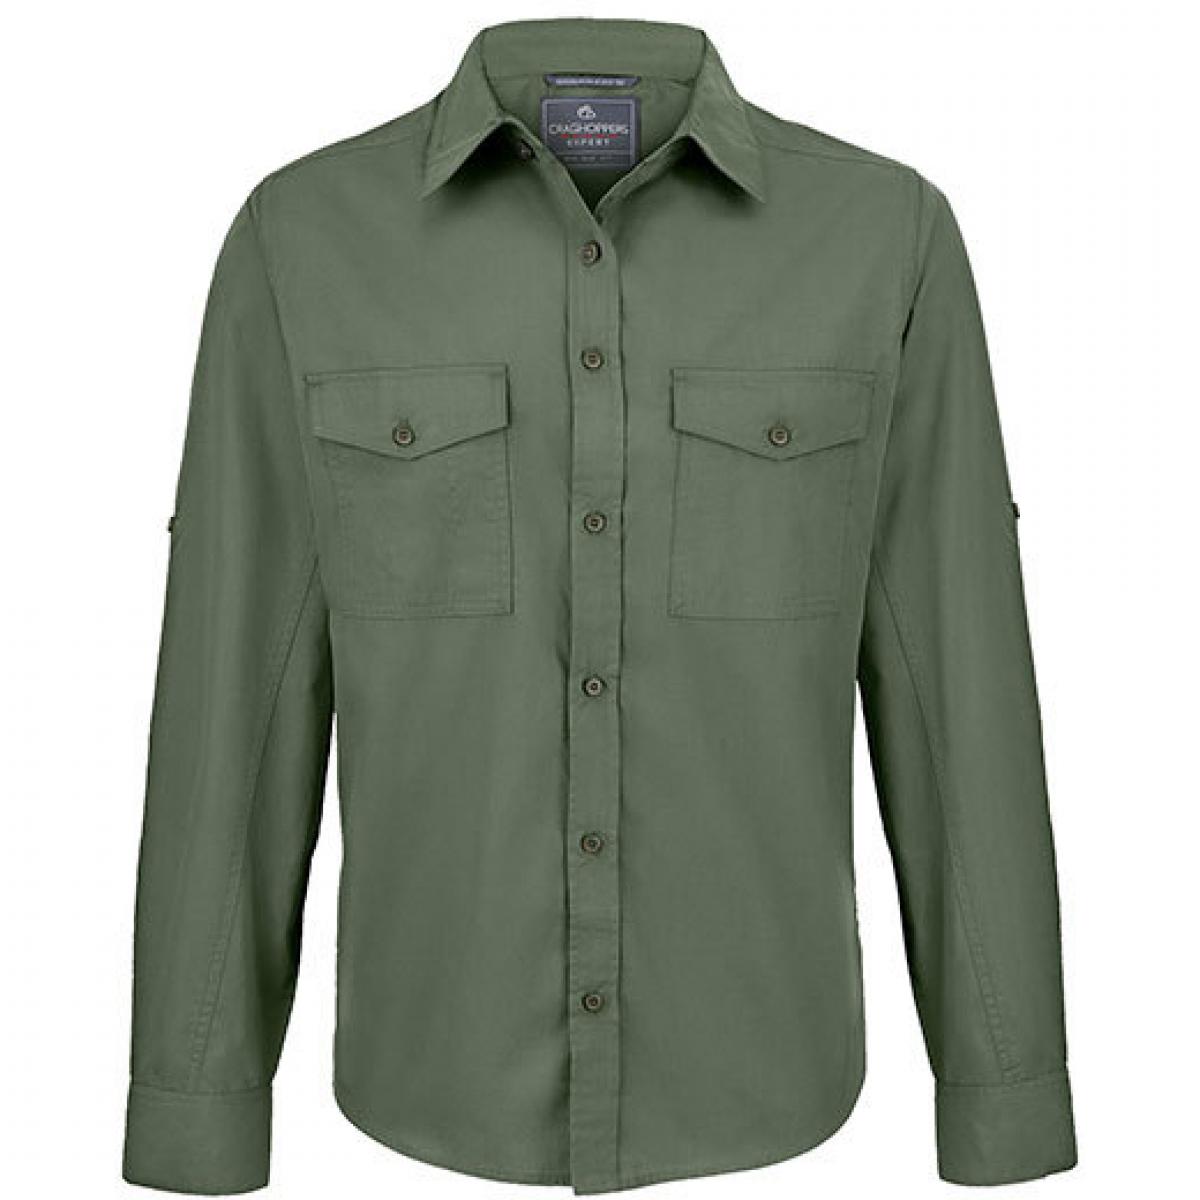 Hersteller: Craghoppers Expert Herstellernummer: CES001 Artikelbezeichnung: Expert Kiwi Long Sleeved Shirt Farbe: Dark Cedar Green